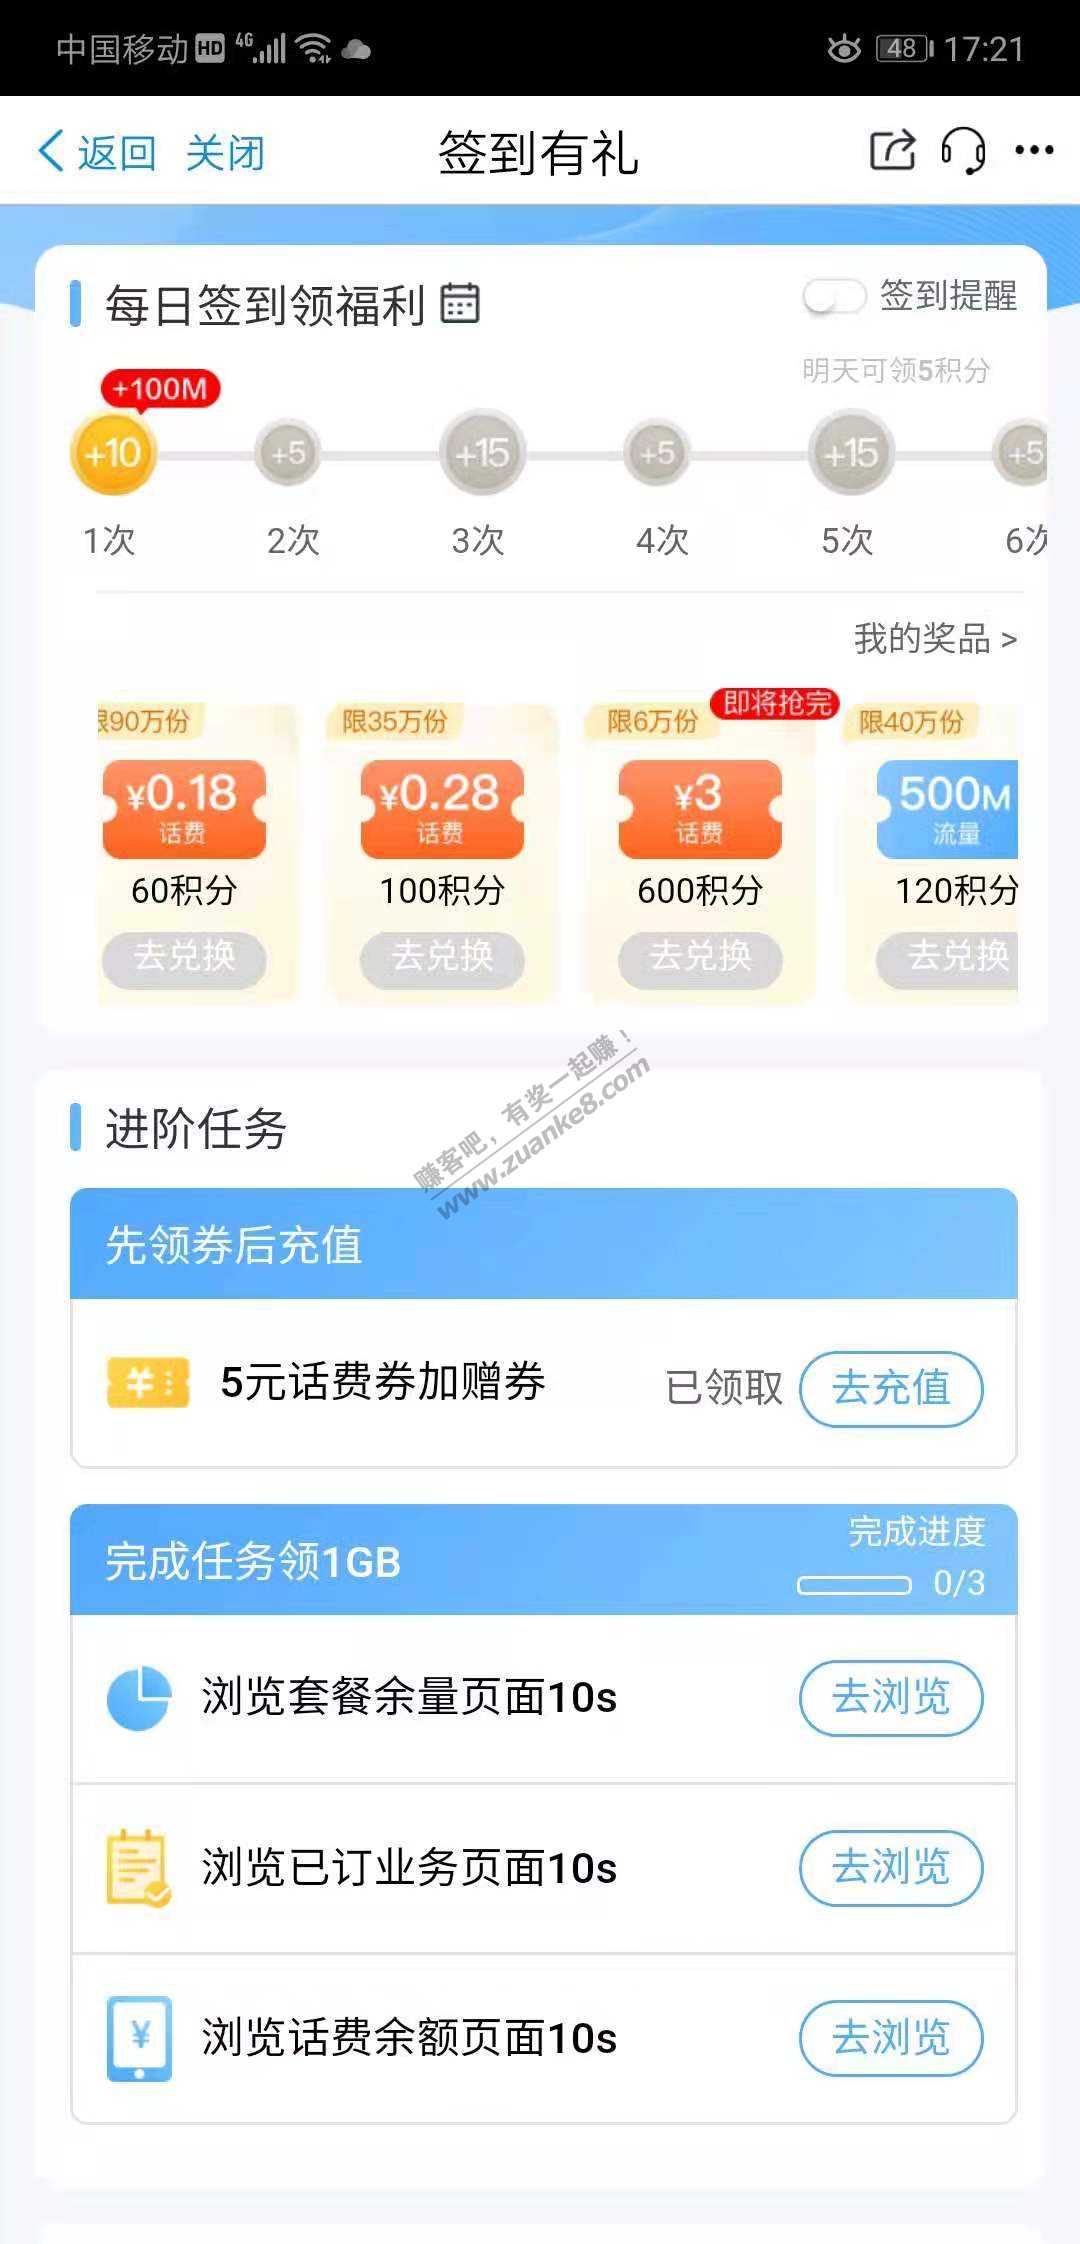 中国移动签到有礼送话费流量-惠小助(52huixz.com)